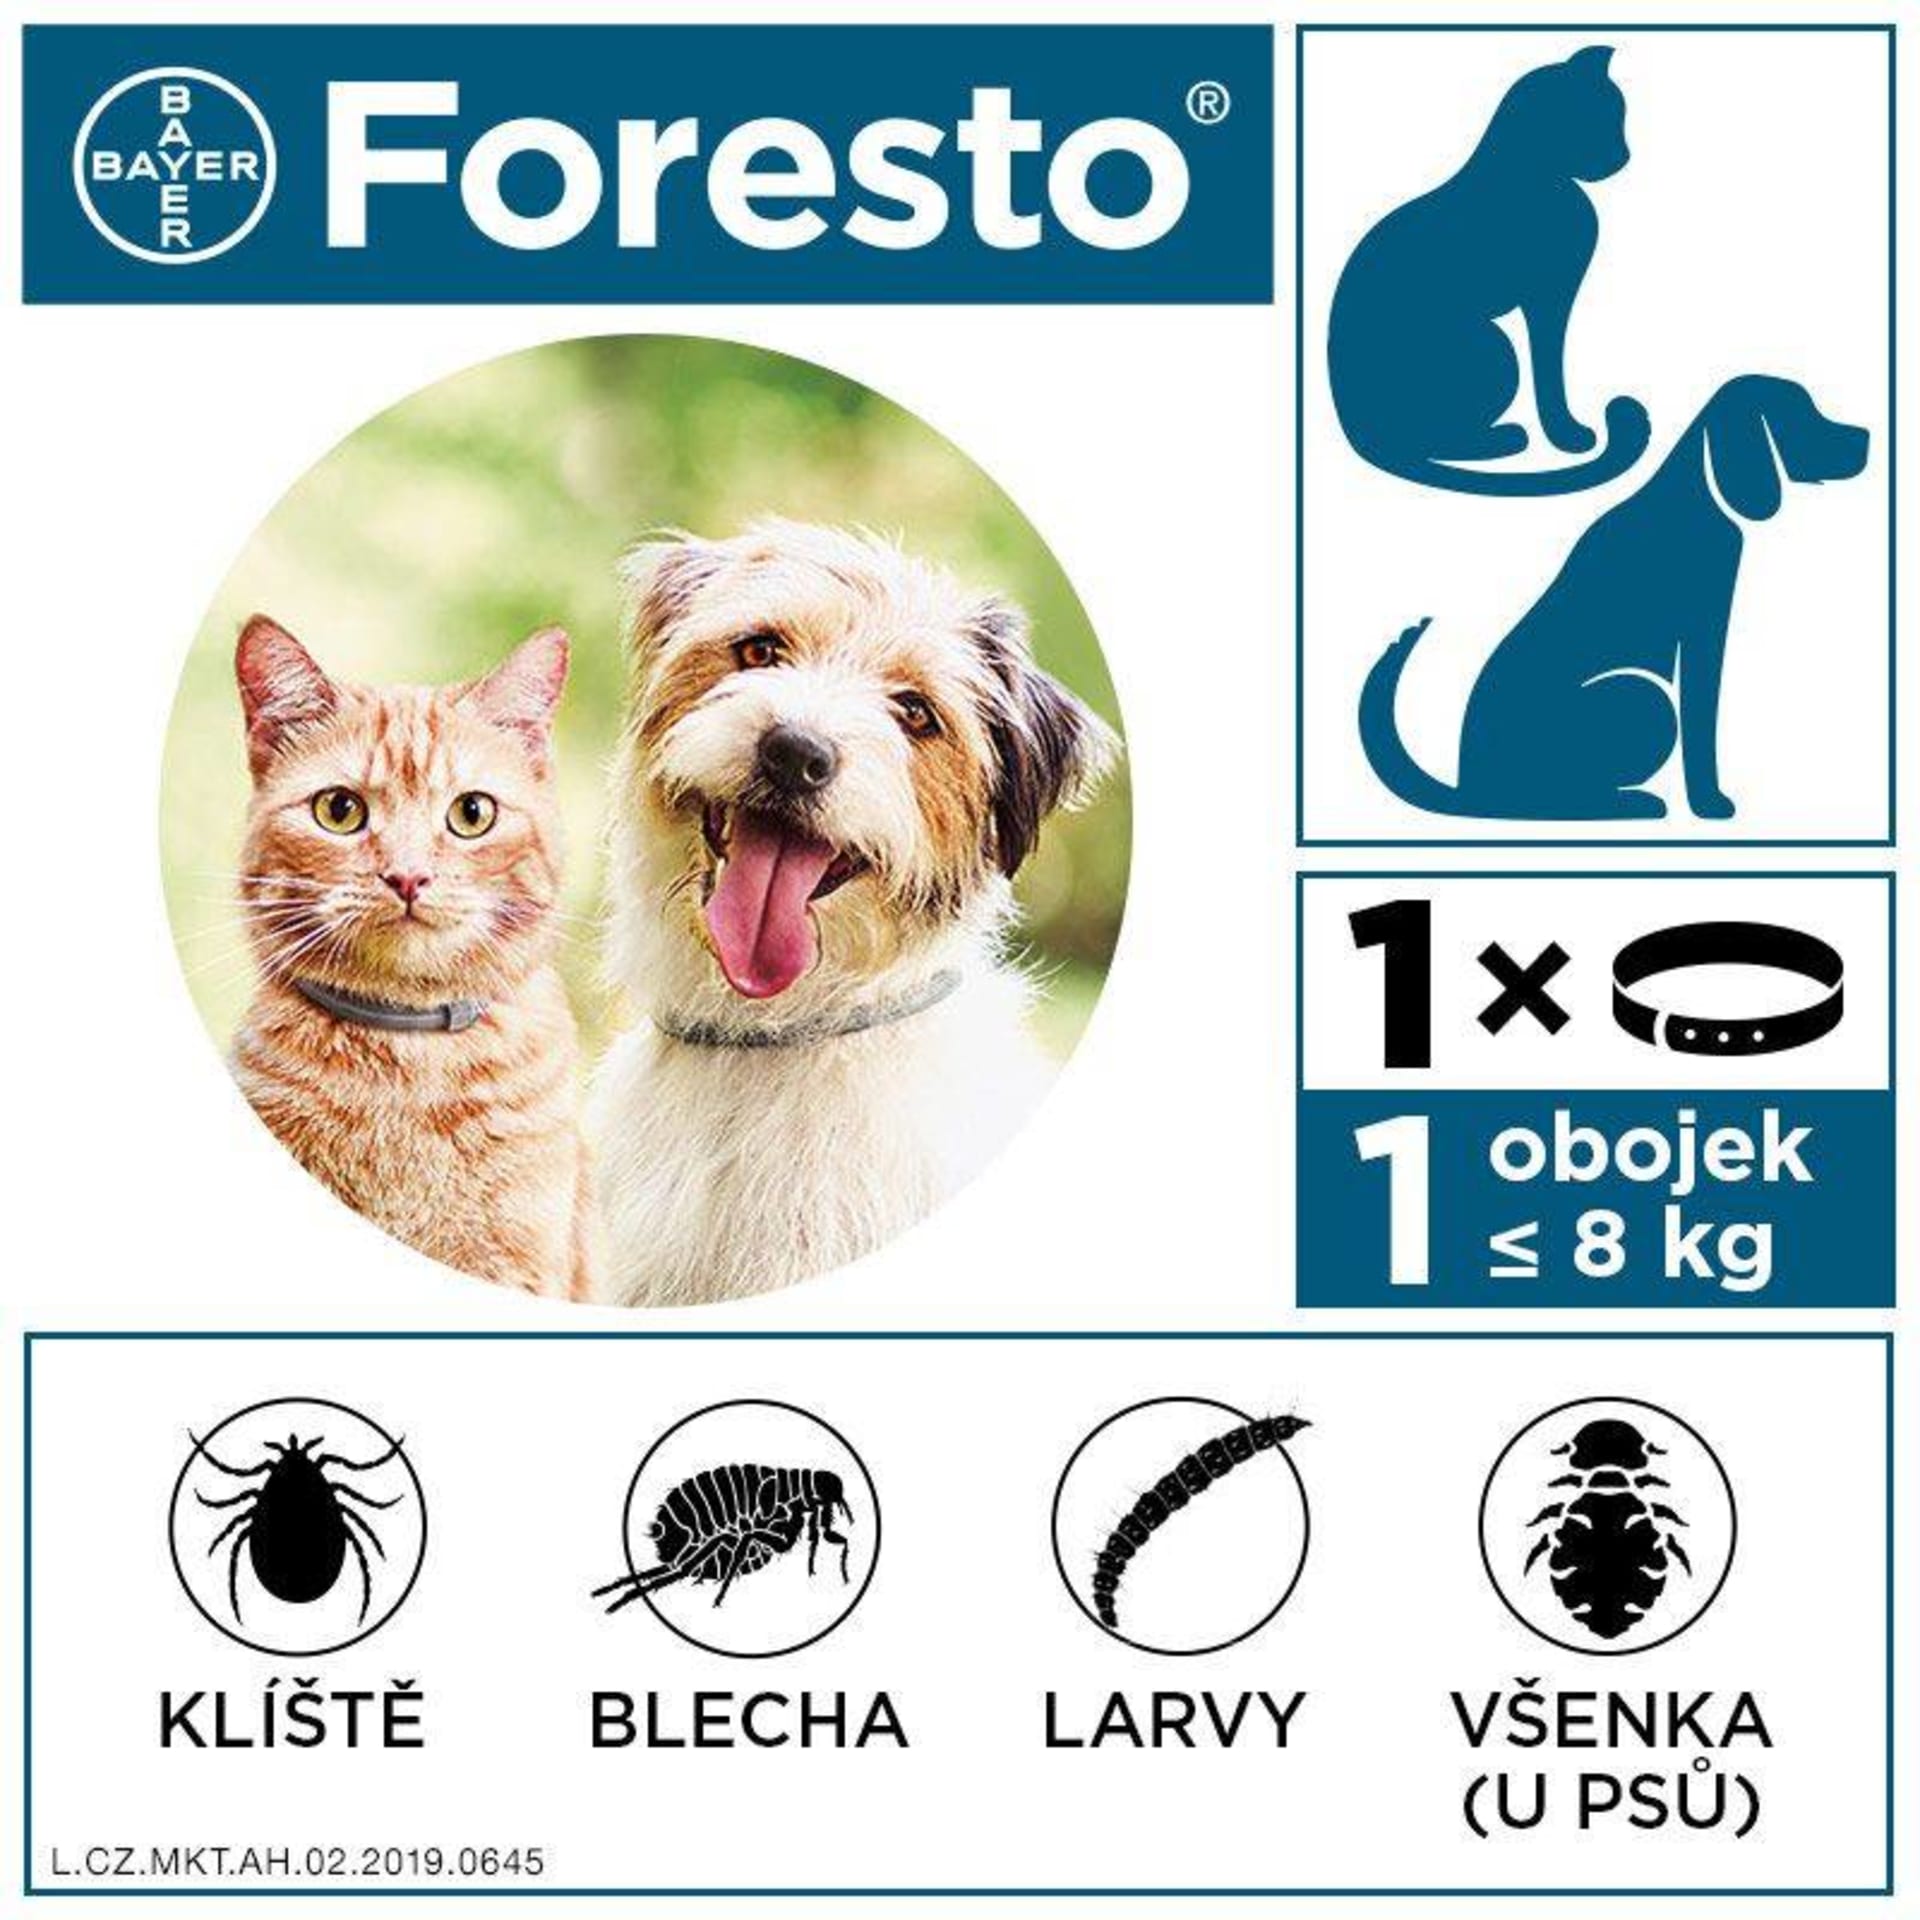 Foresto je veterinární léčivý přípravek. Pečlivě čtěte příbalovou informaci.